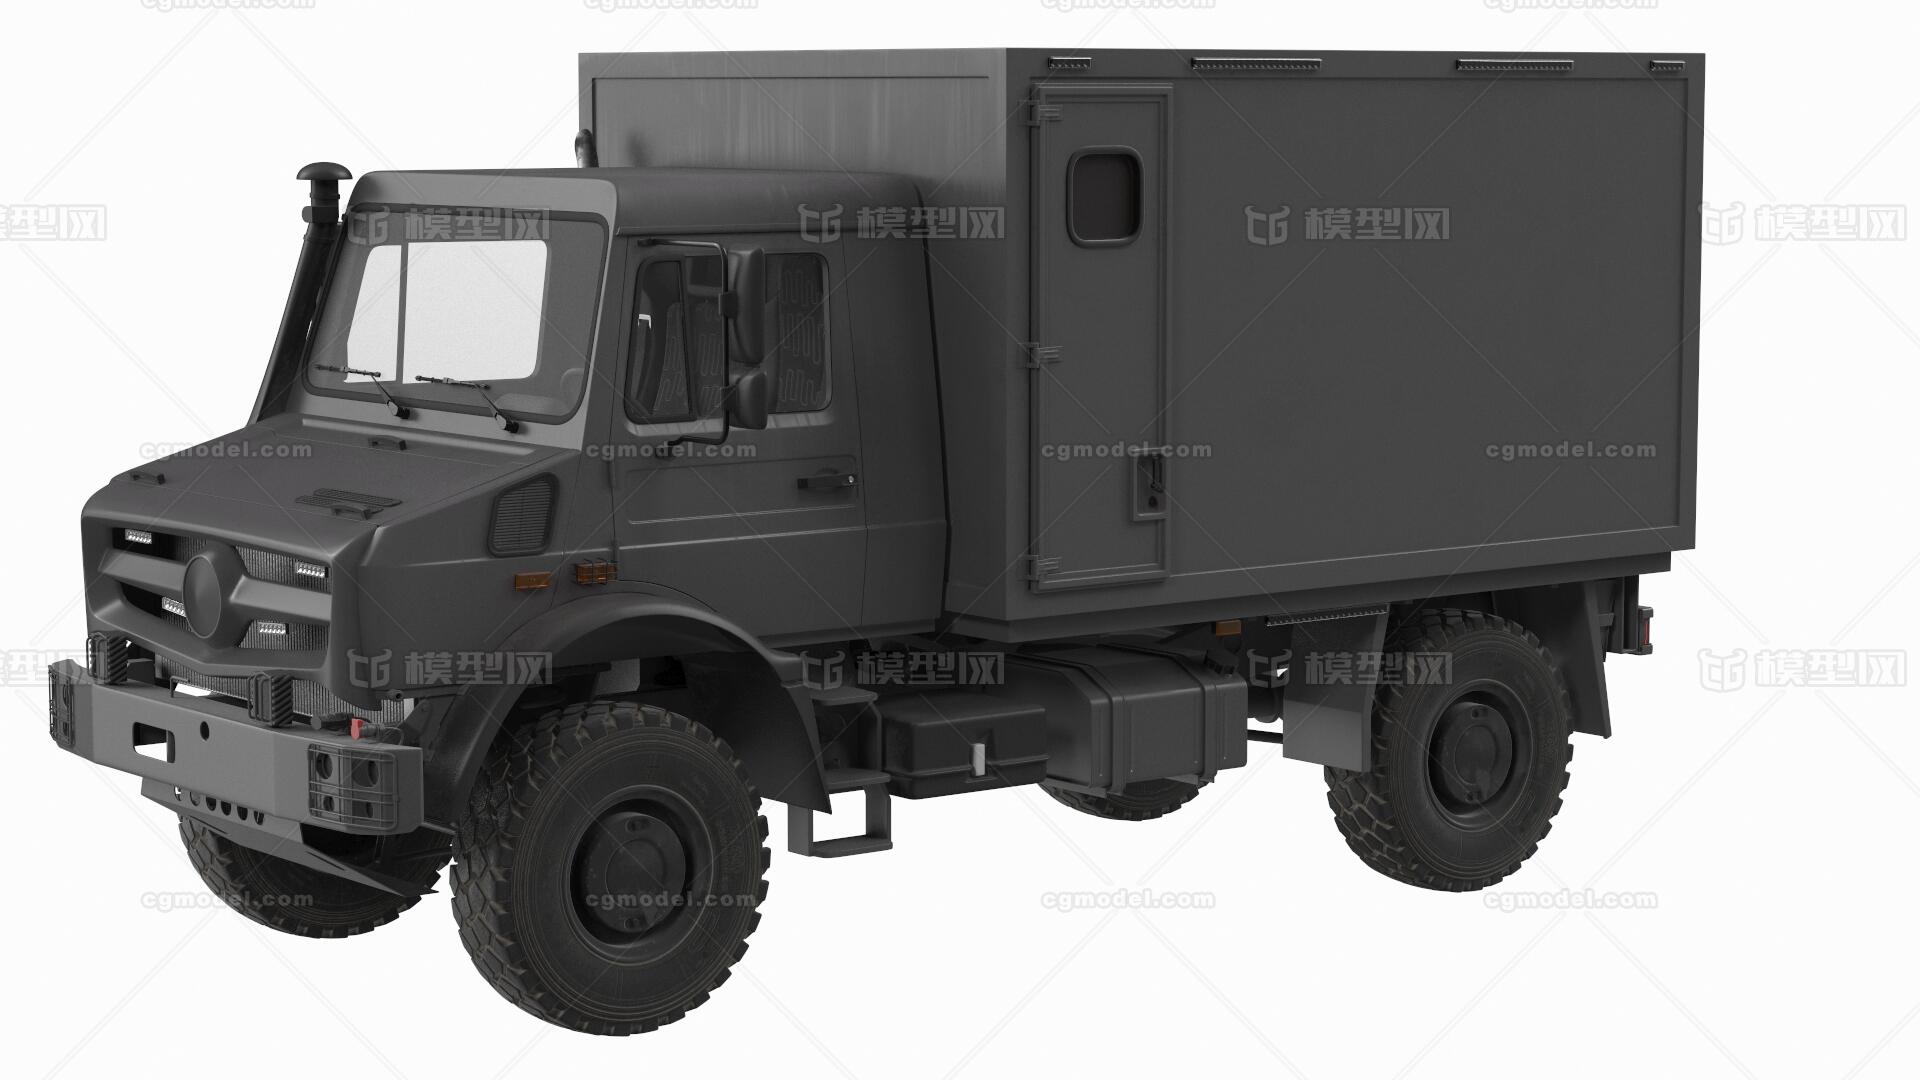 某驰 unimog u5023 全地形越野车 特种车 卡车 军用全地形运输车 改装